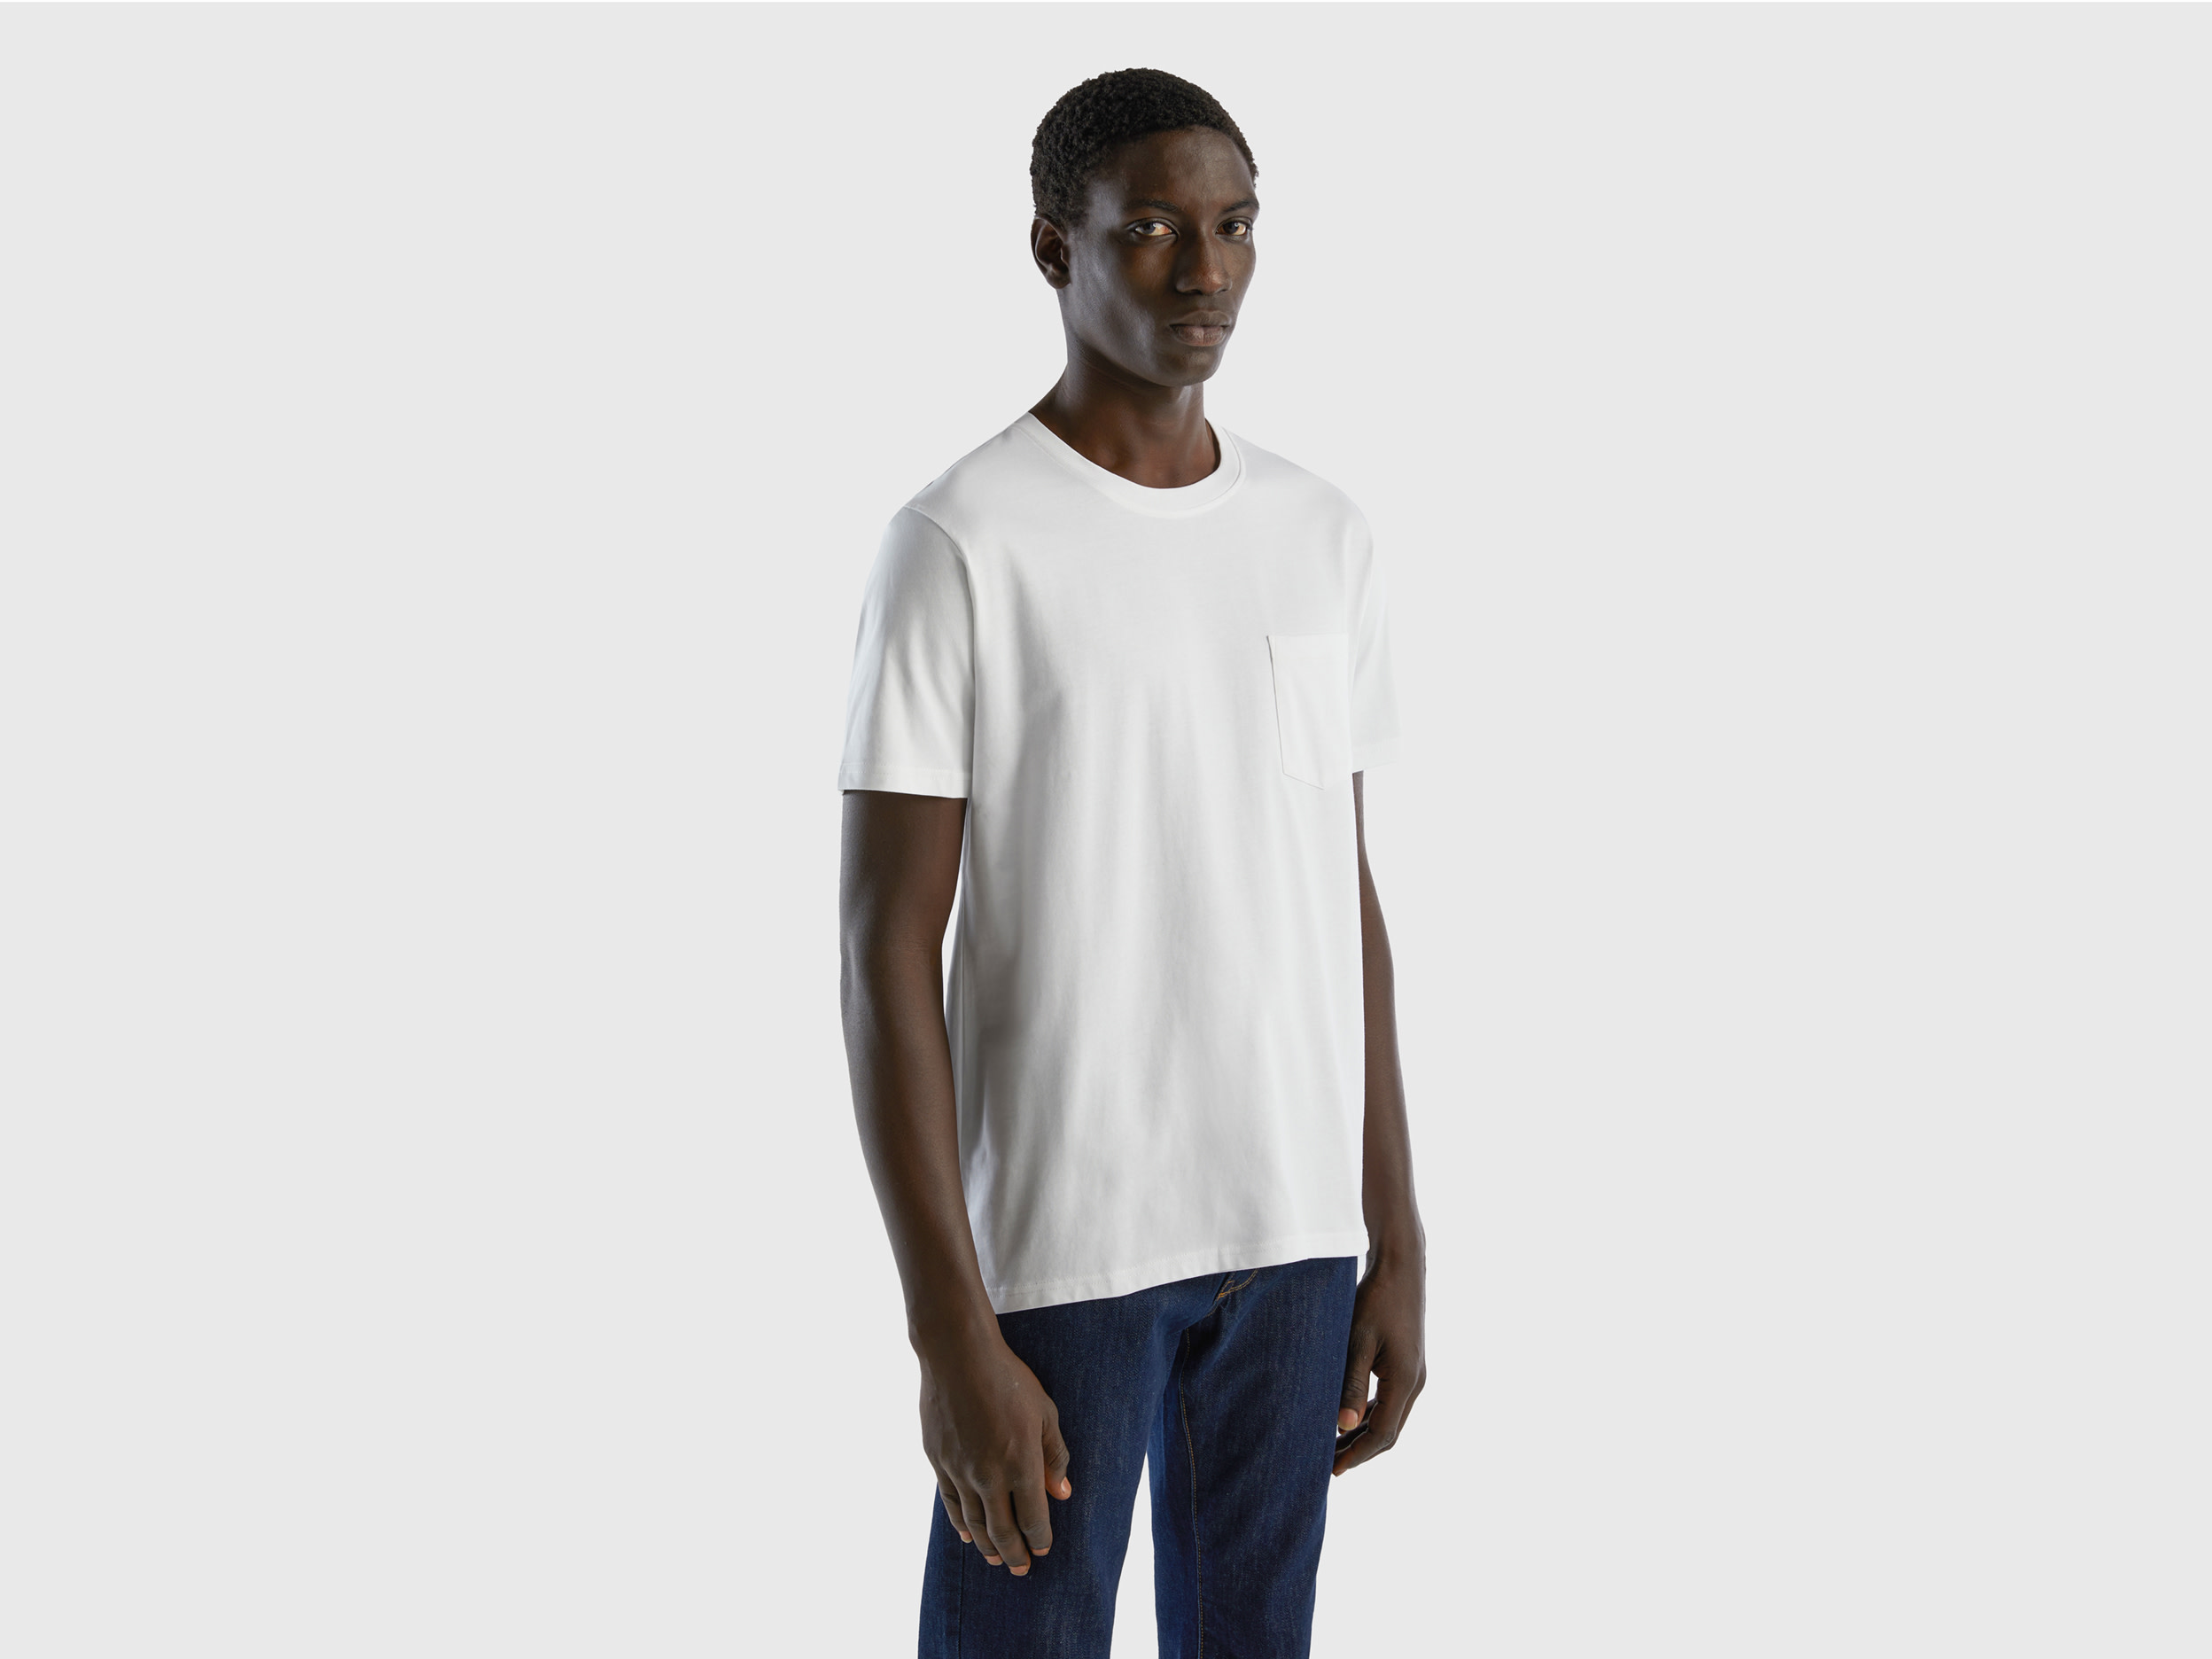 Benetton, 100% Cotton T-shirt With Pocket, size XXXL, White, Men